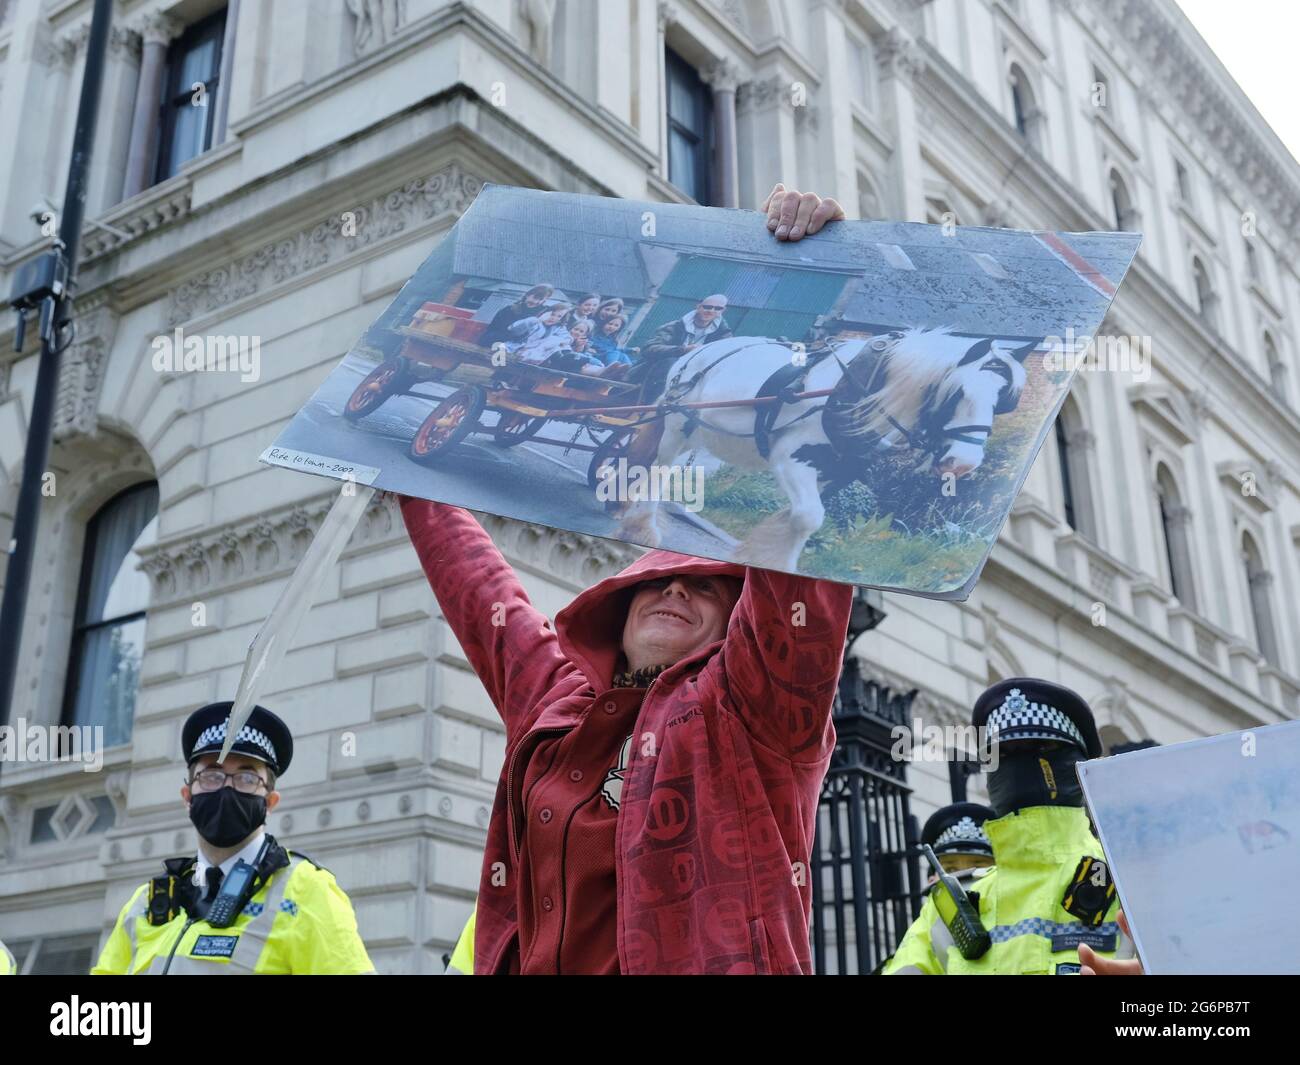 Un homme se tient en face de Downing Street pour protester contre le projet de loi sur la criminalité et la peine, qui selon les activistes criminaliserait les voyageurs. Banque D'Images